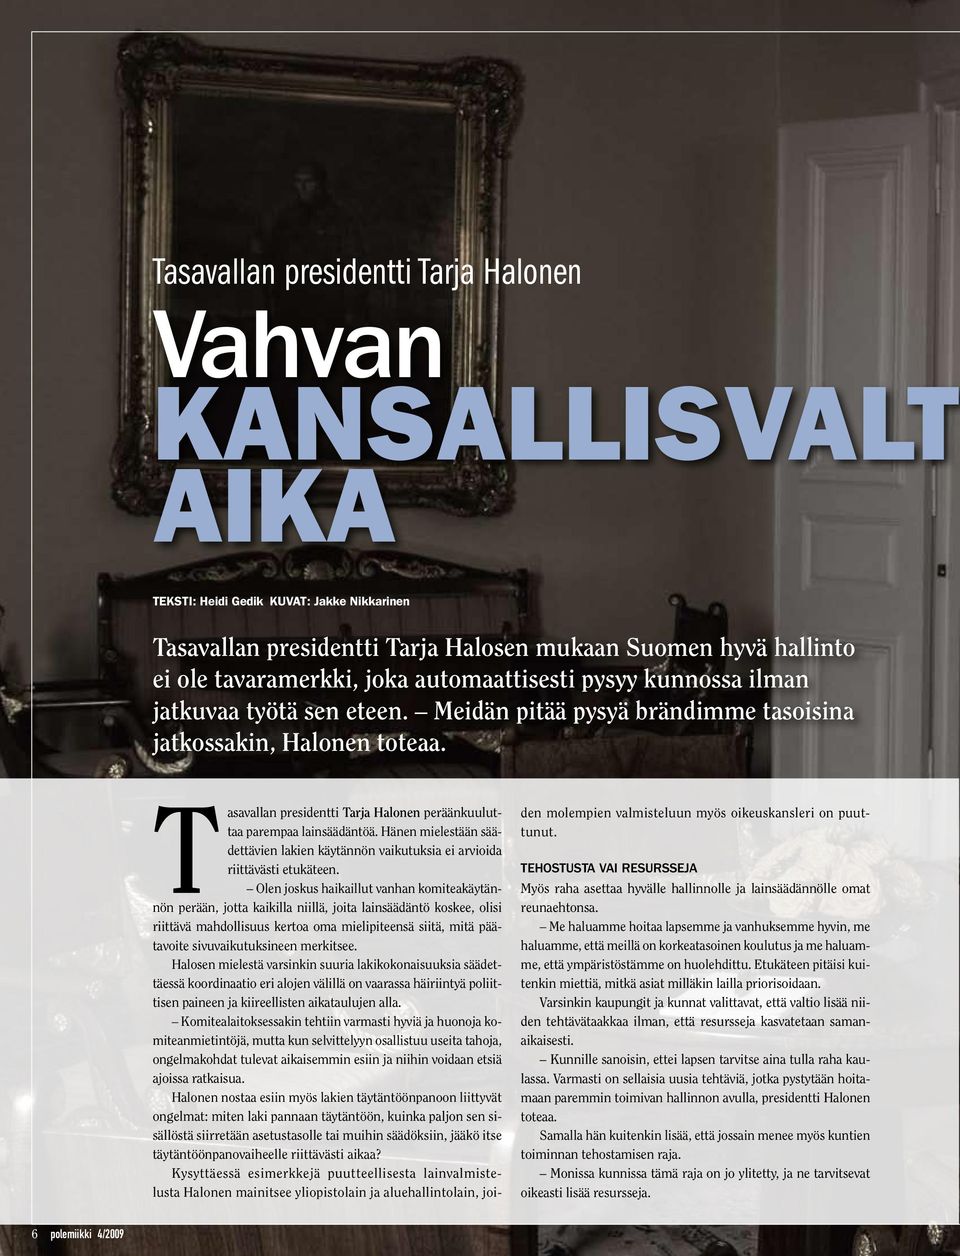 Tasavallan presidentti Tarja Halonen peräänkuuluttaa parempaa lainsäädäntöä. Hänen mielestään säädettävien lakien käytännön vaikutuksia ei arvioida riittävästi etukäteen.